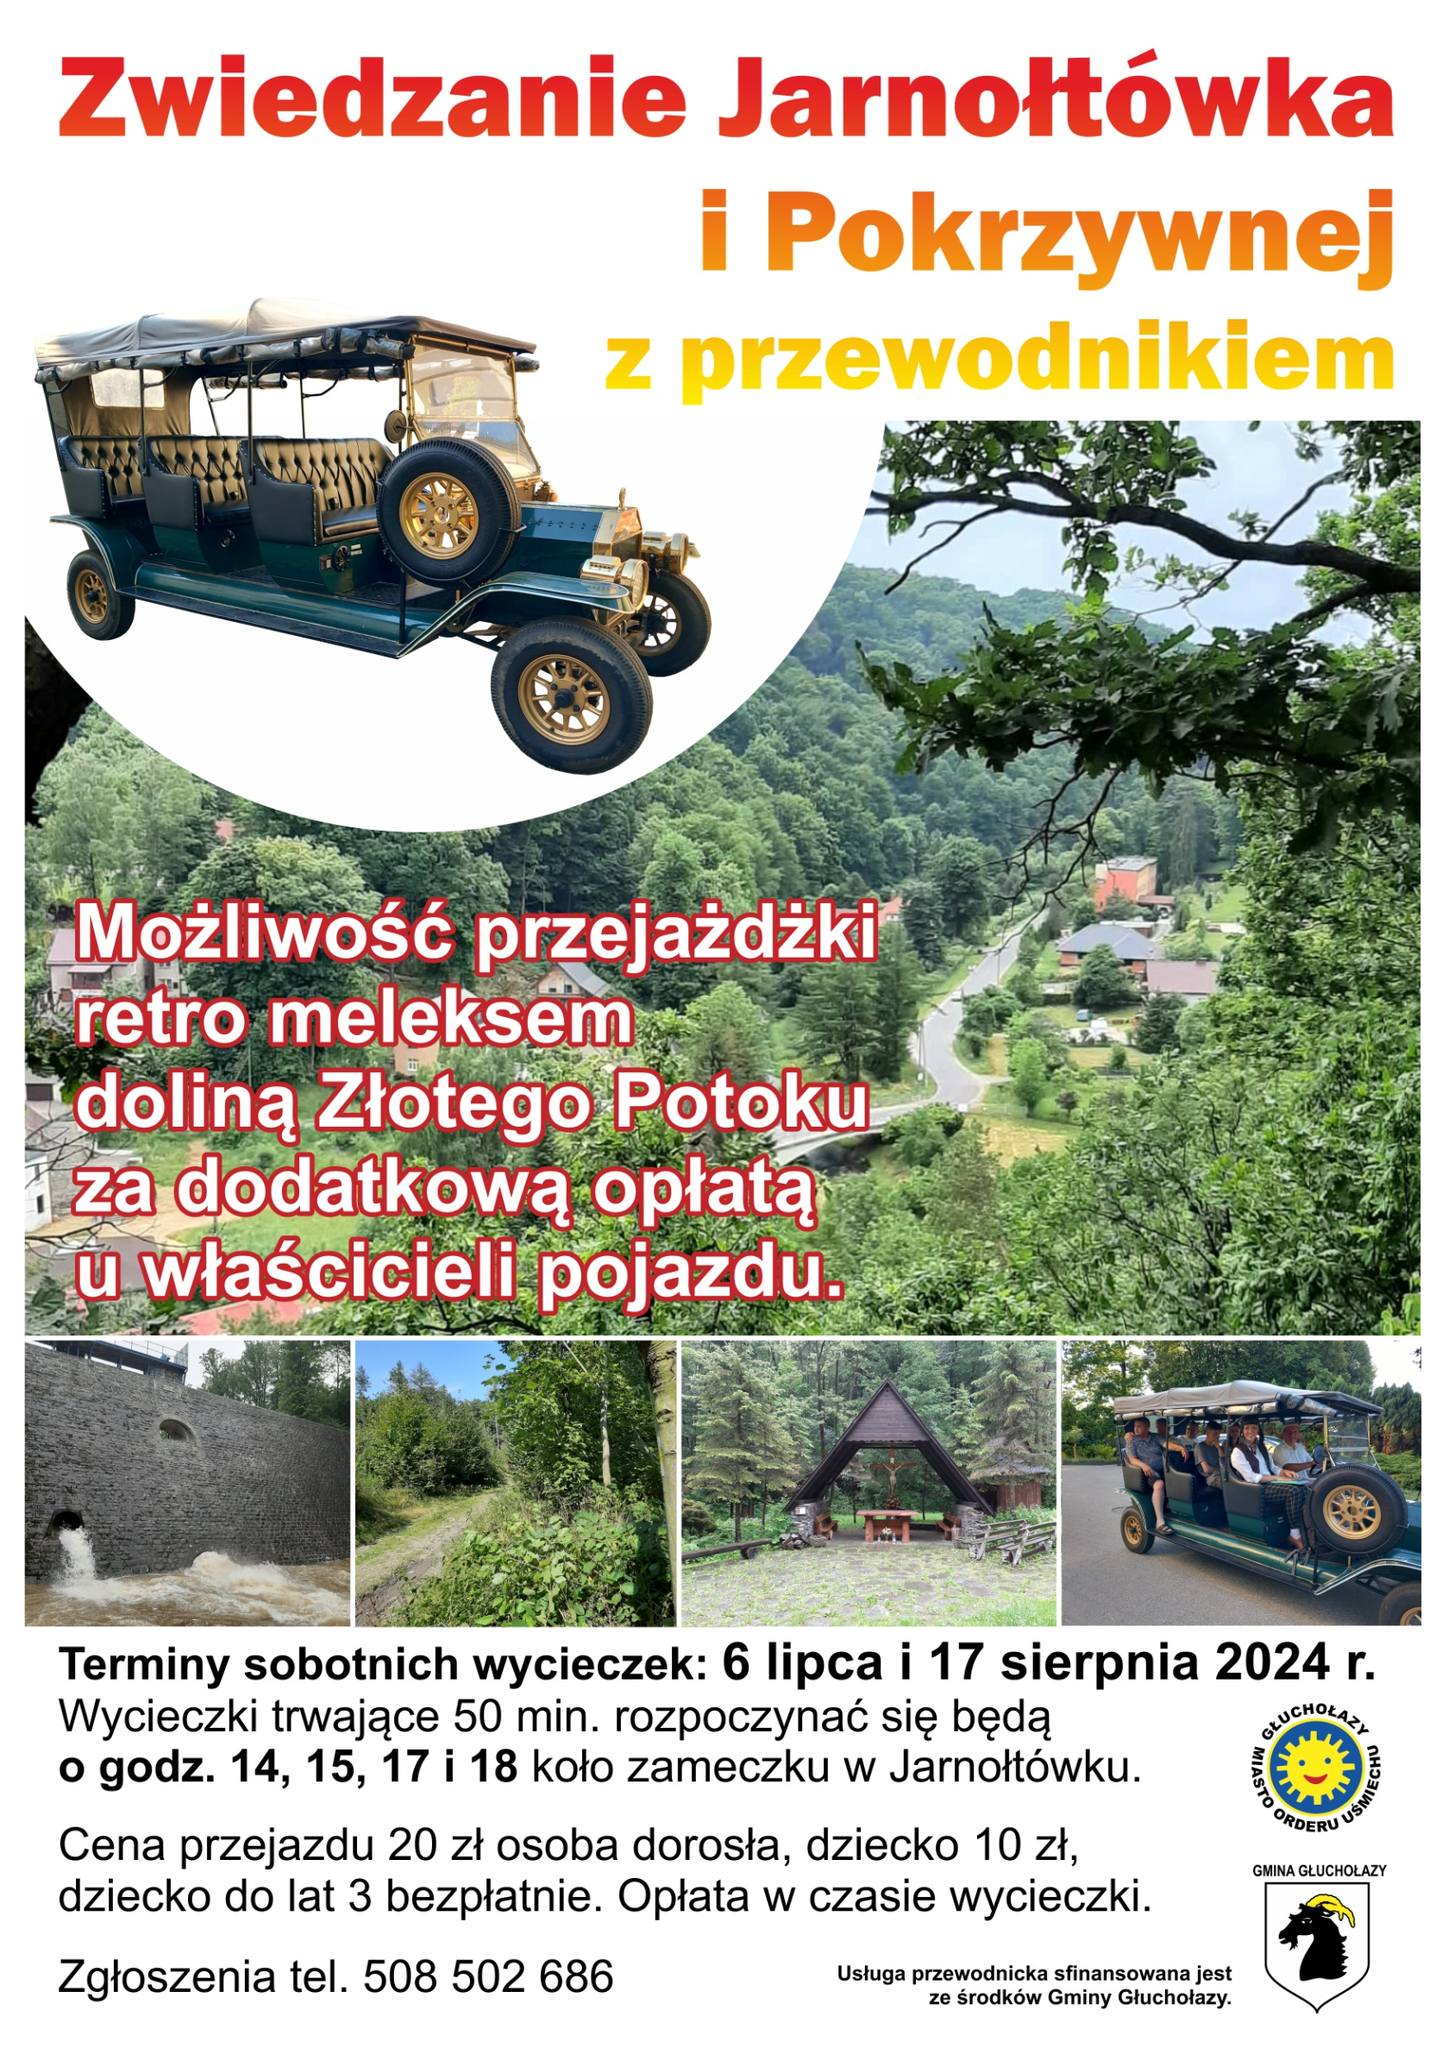 Zwiedzanie Jarnołtówka i Pokrzywnej z przewodnikiem/ Návštěva Jarnołtówku a Pokrzywny s průvodcem